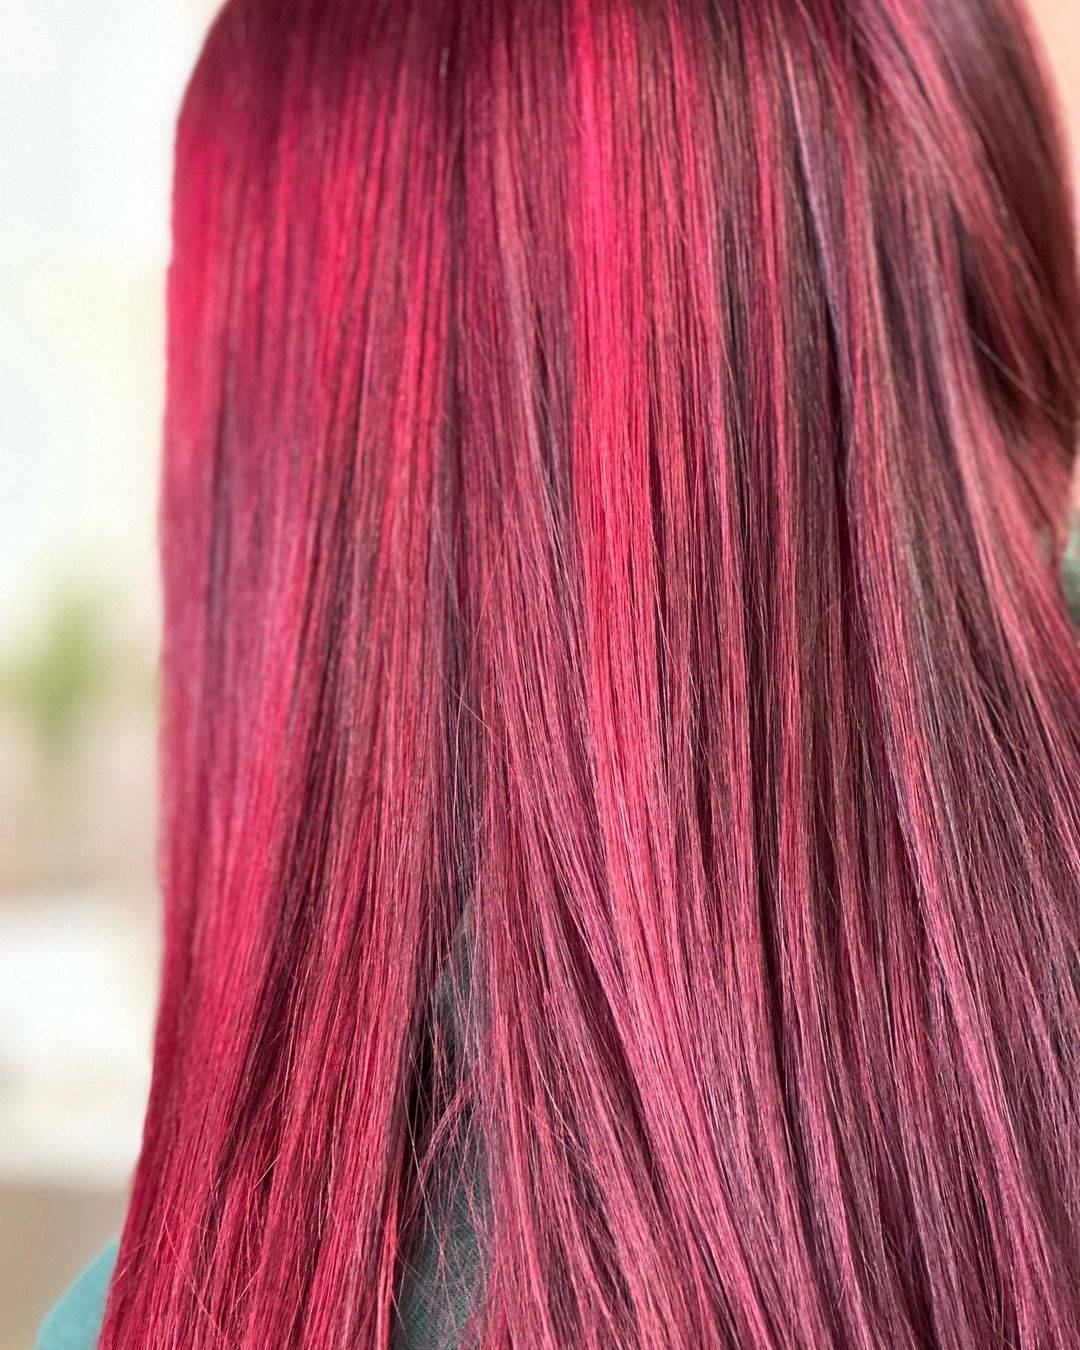 Burgundy hair color 366 burgundy hair color | burgundy hair color for women | burgundy hair color highlights Burgundy Hair Color